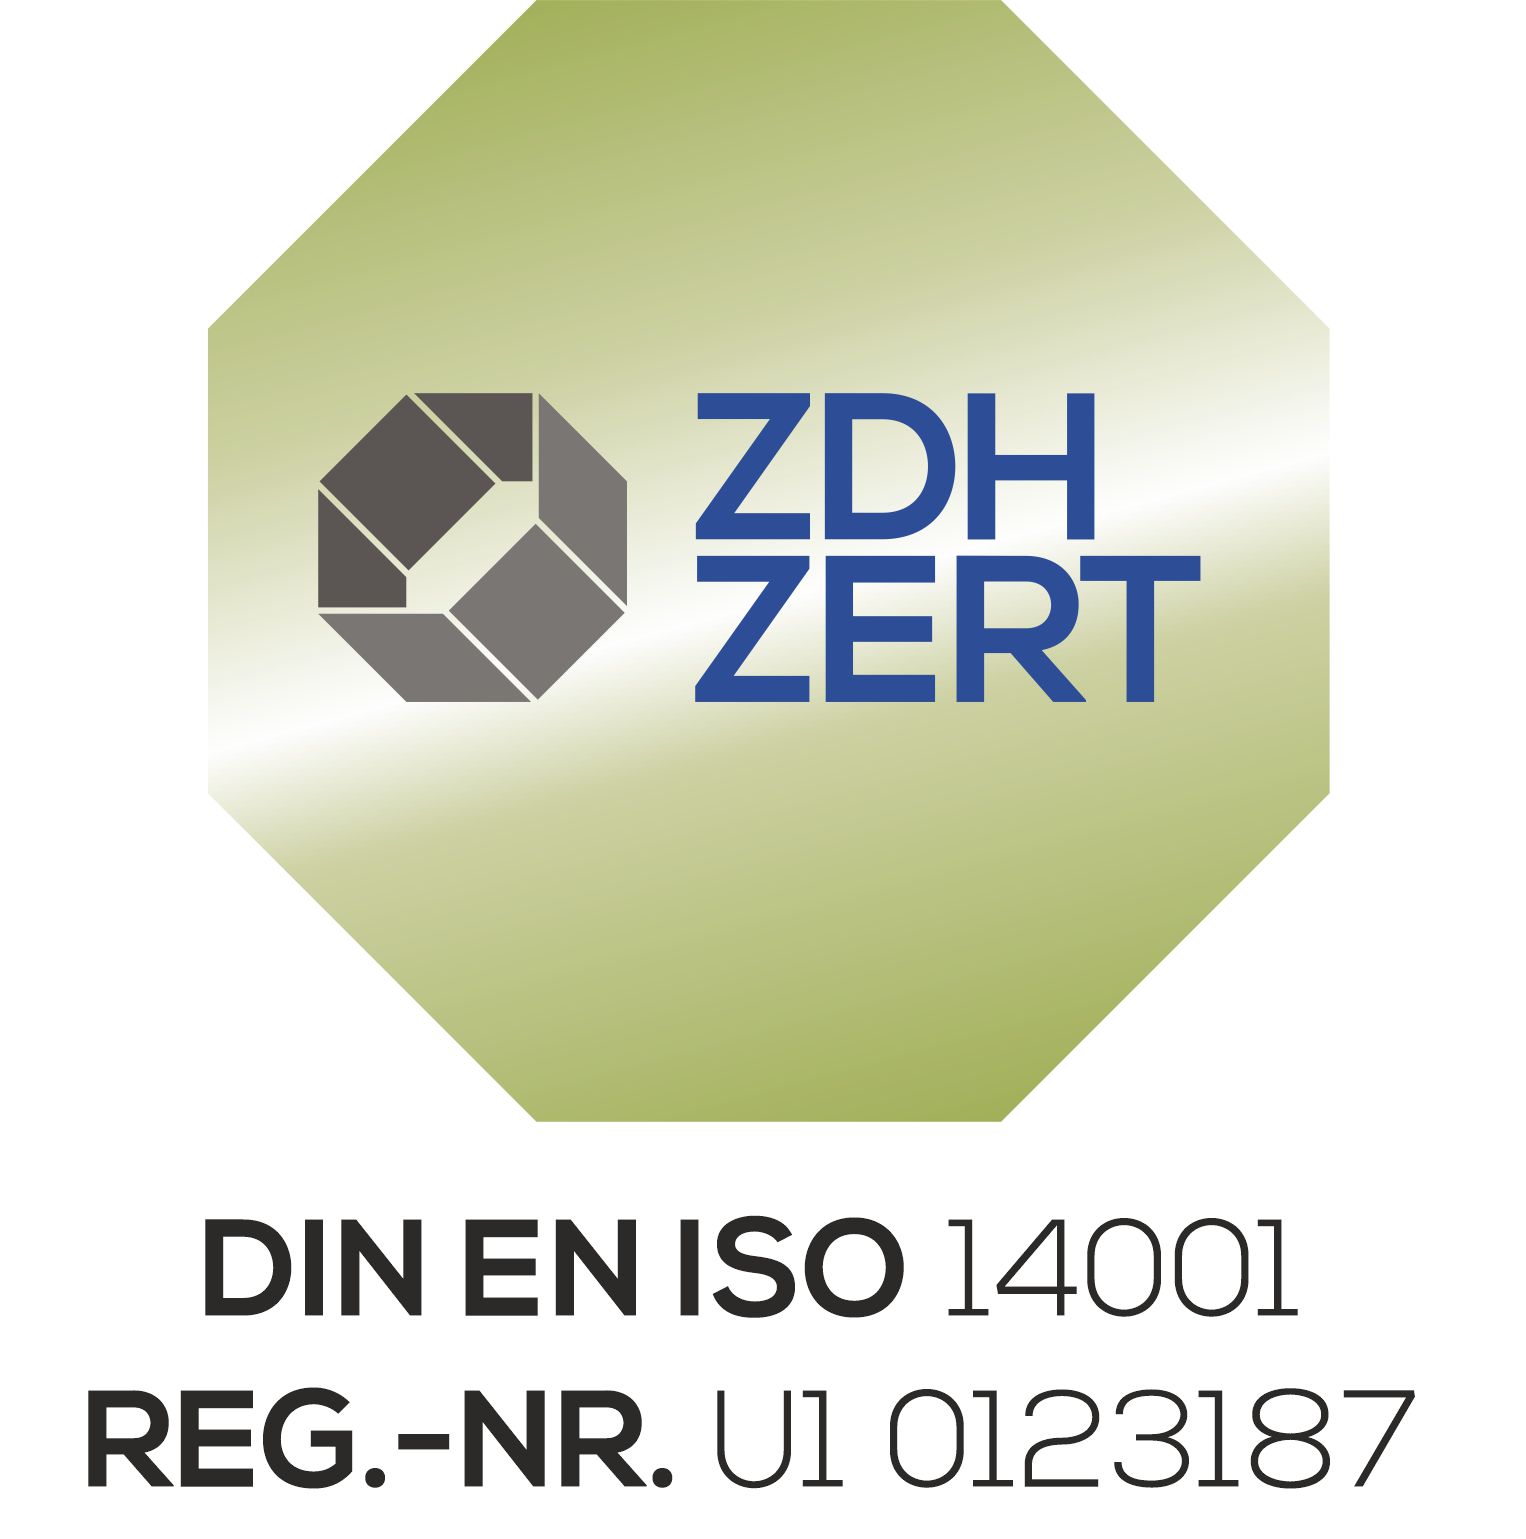 zdh-zert-2